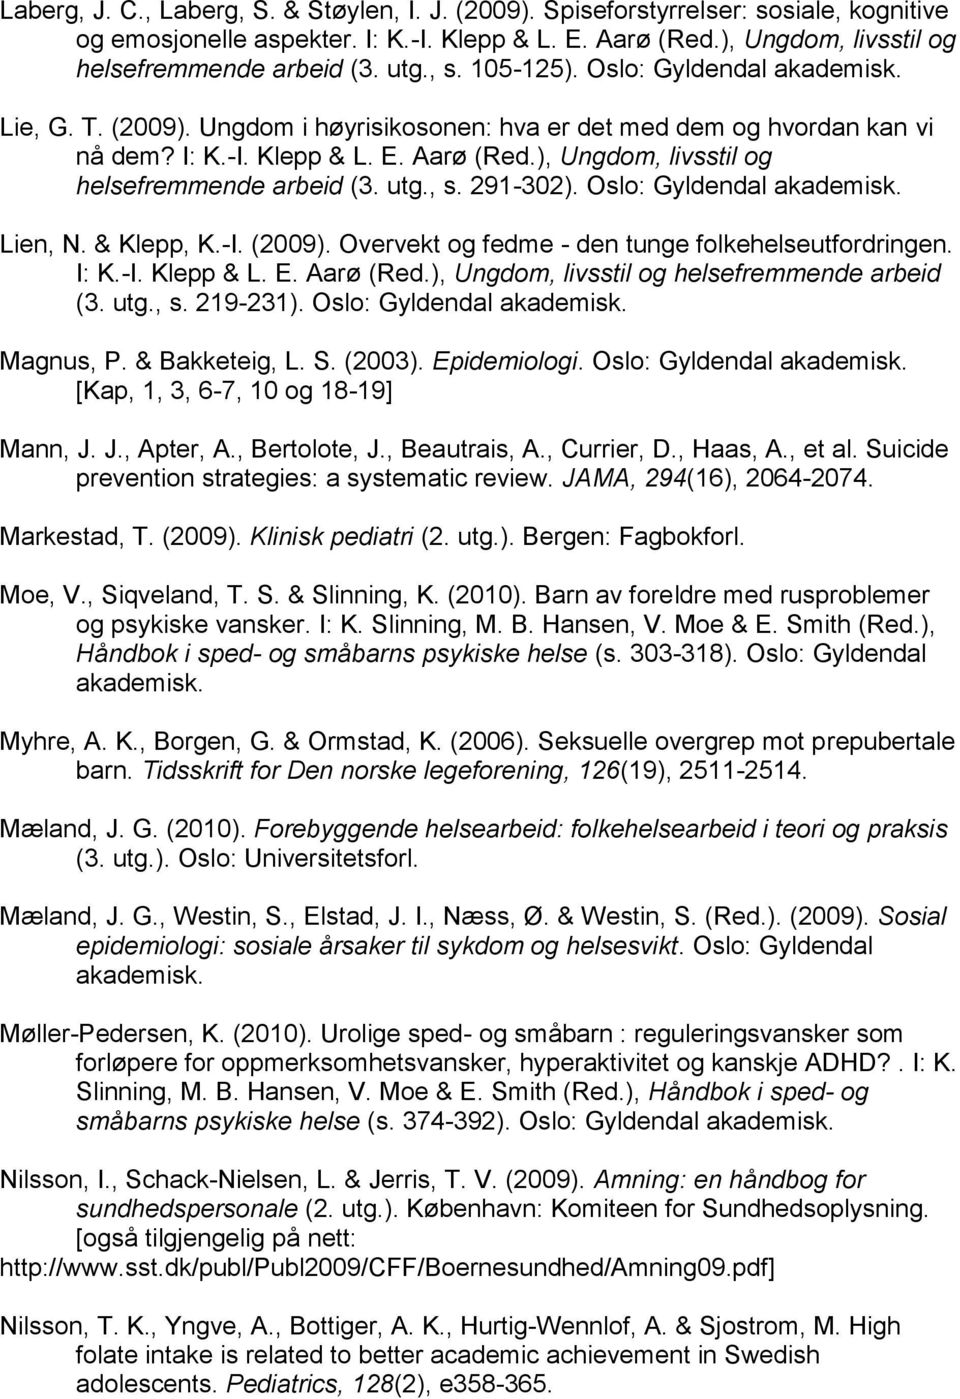 , s. 291-302). Oslo: Lien, N. & Klepp, K.-I. (2009). Overvekt og fedme - den tunge folkehelseutfordringen. I: K.-I. Klepp & L. E. Aarø (Red.), Ungdom, livsstil og helsefremmende arbeid (3. utg., s. 219-231).